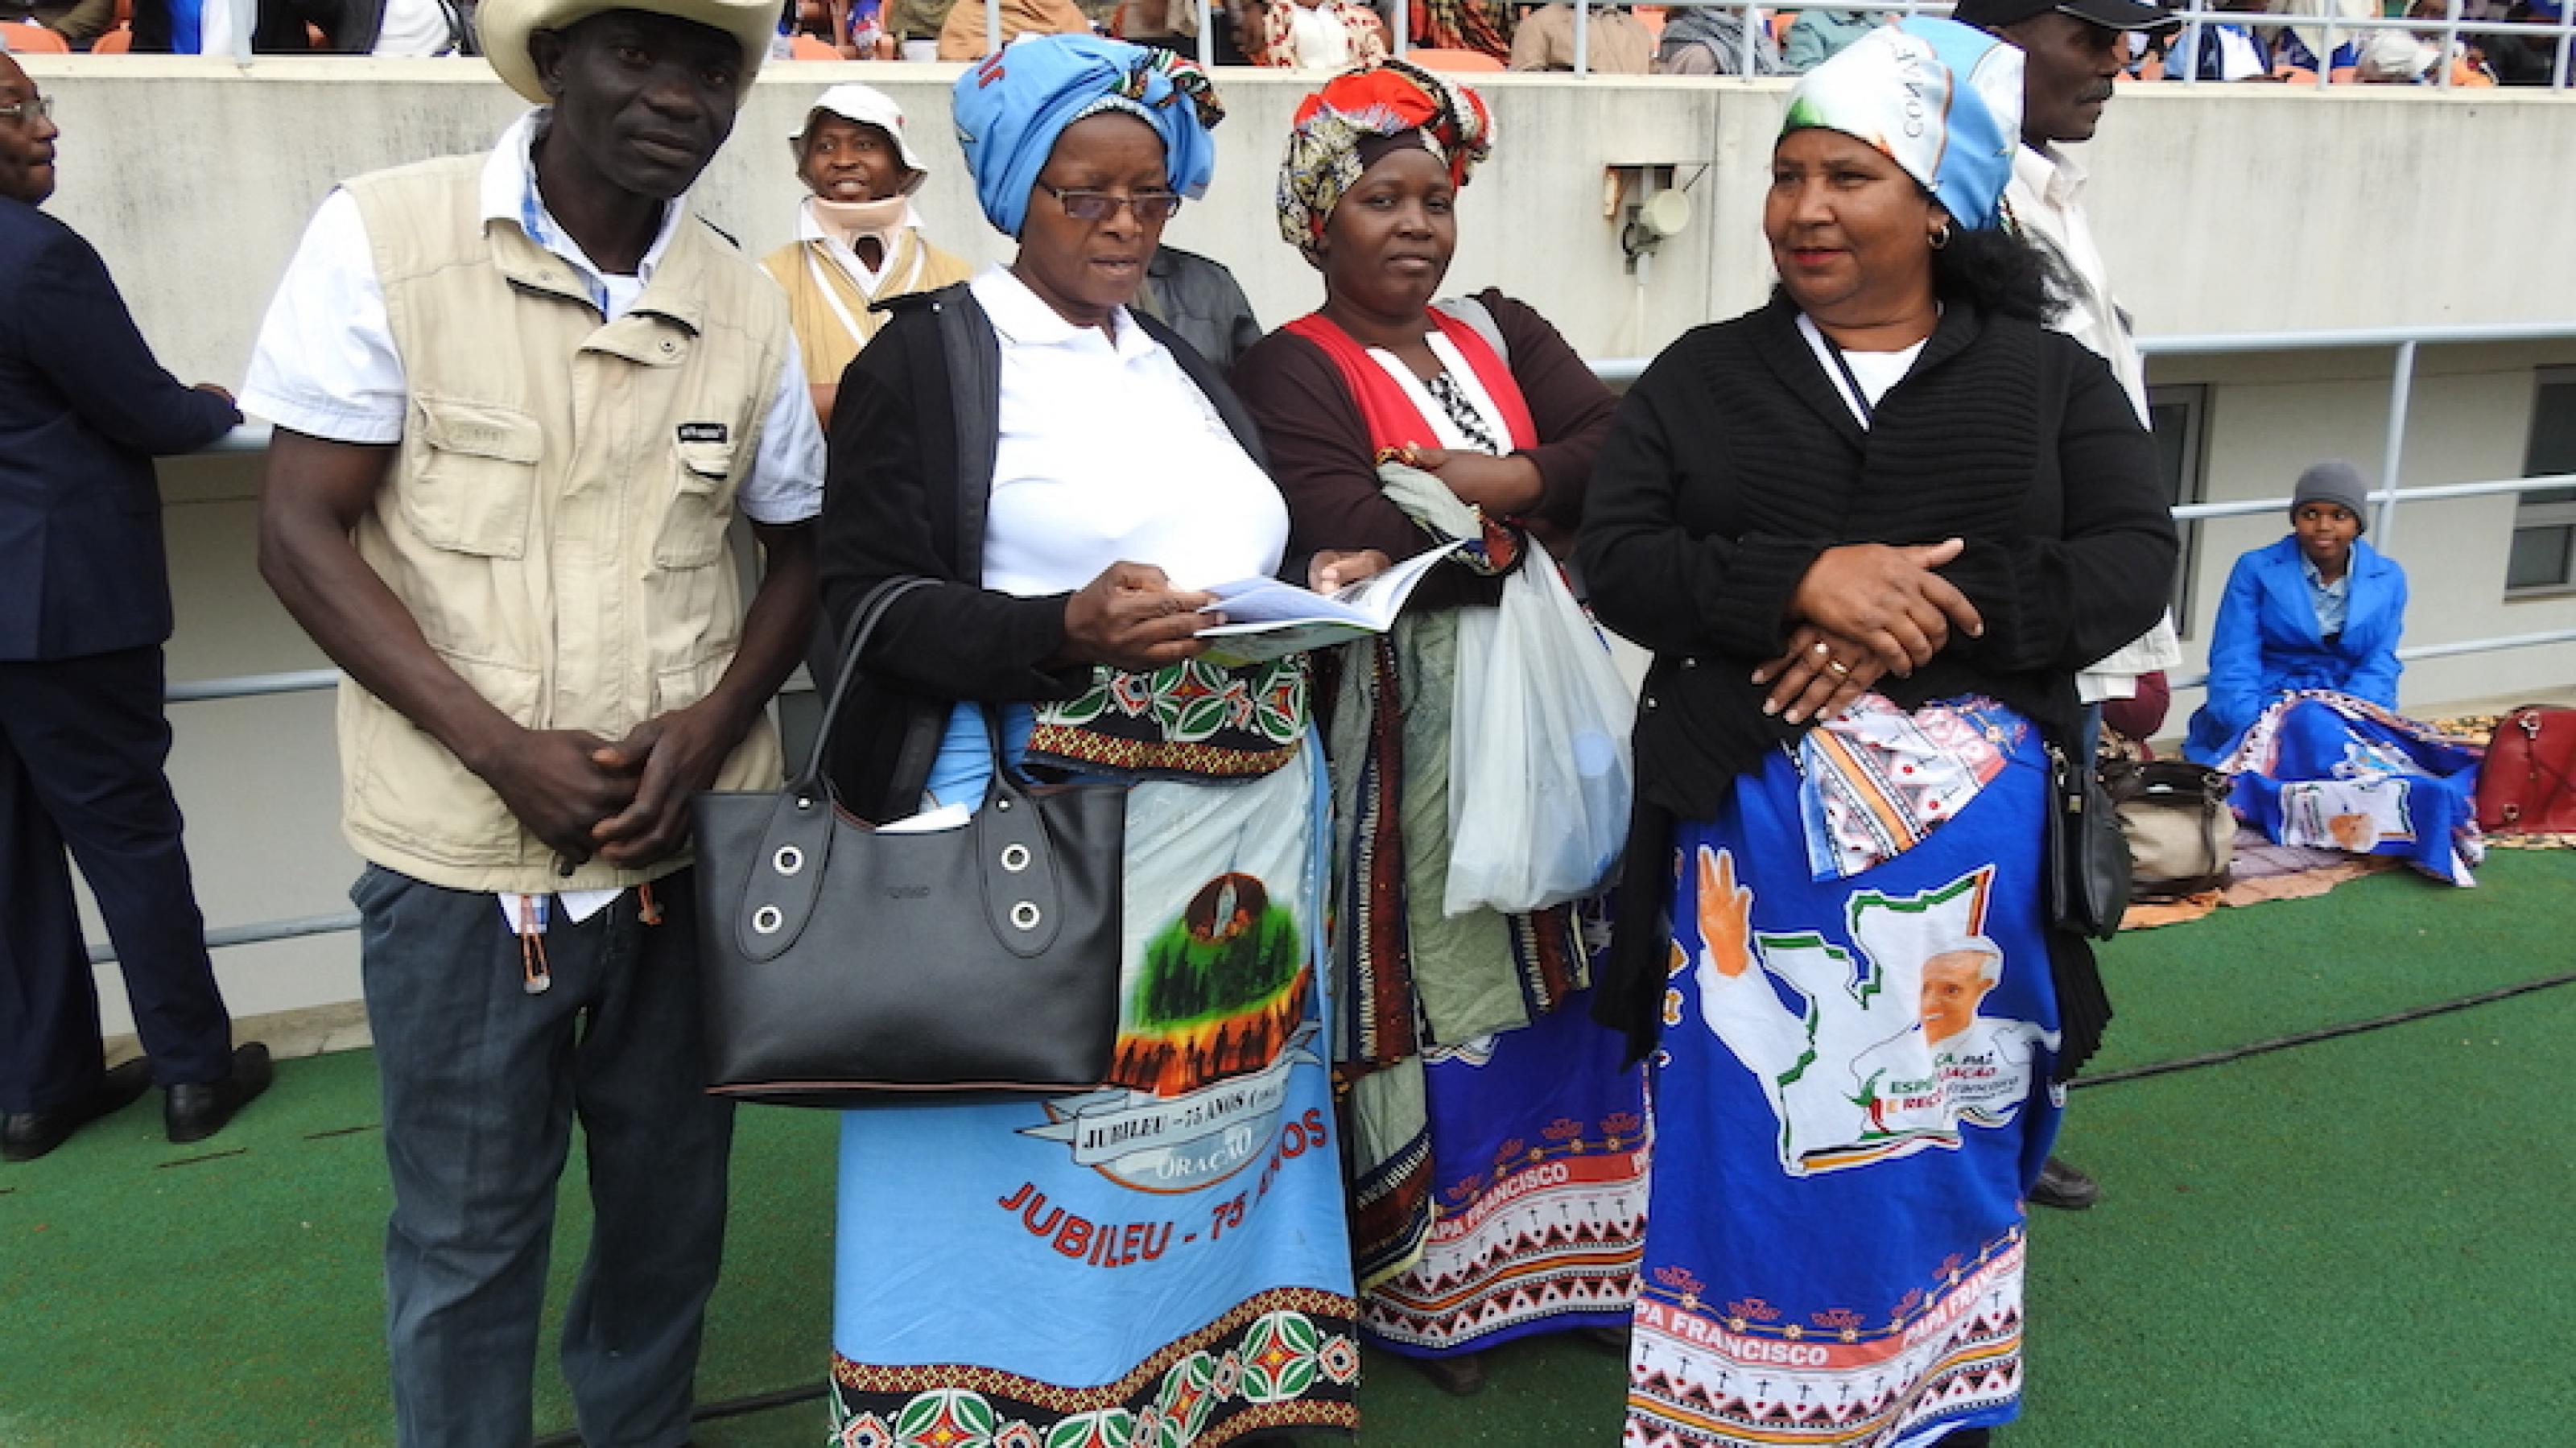 Frauen bei einer Großveranstaltung in Mosambik tragen Wickeltücher als Rock und Kopfputz.